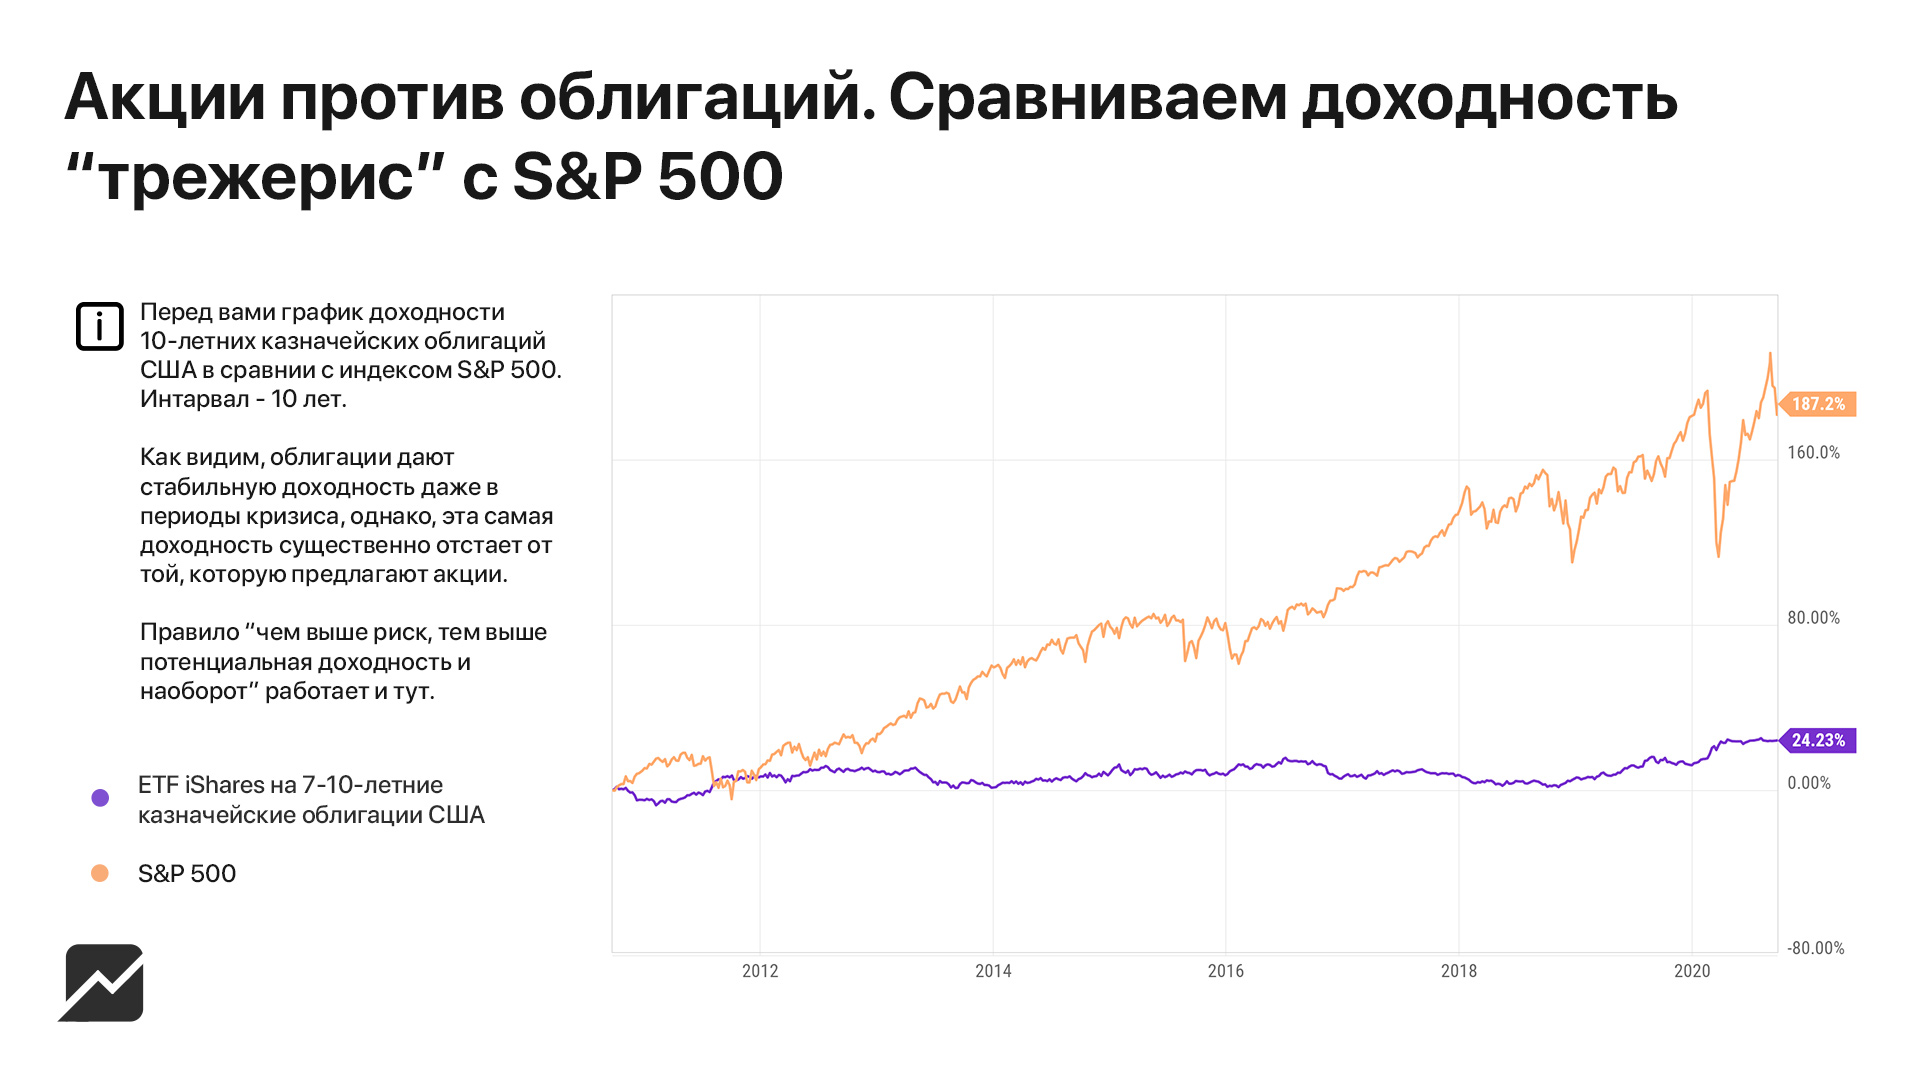 Тест российские облигации без рейтинга